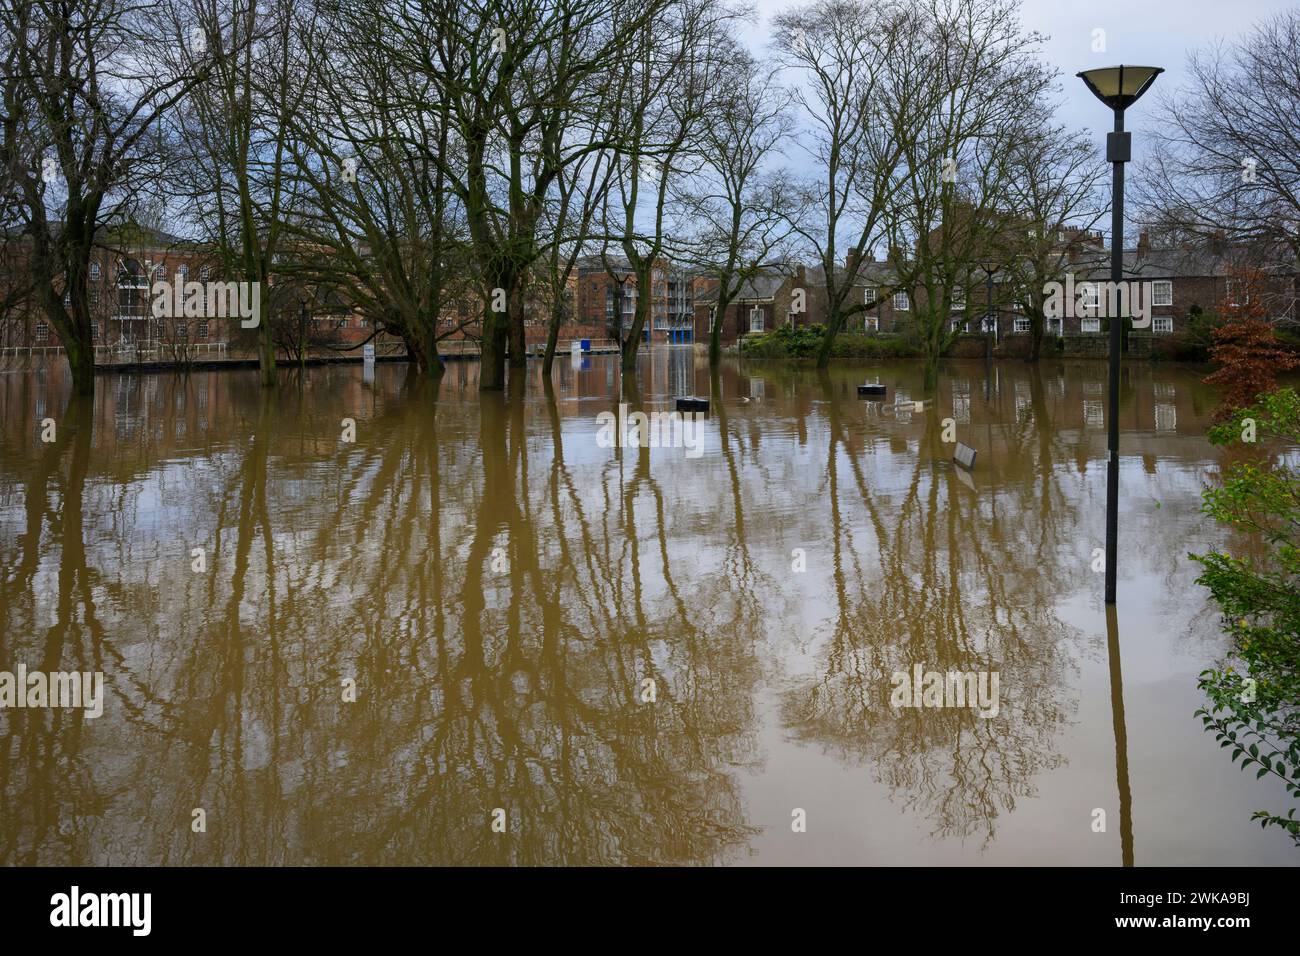 Il fiume Ouse ha fatto scoppiare le sue sponde e inondazioni dopo forti piogge (sommerse le acque del fiume sotto l'inondazione, i parchi) - York, North Yorkshire, Inghilterra, Regno Unito. Foto Stock